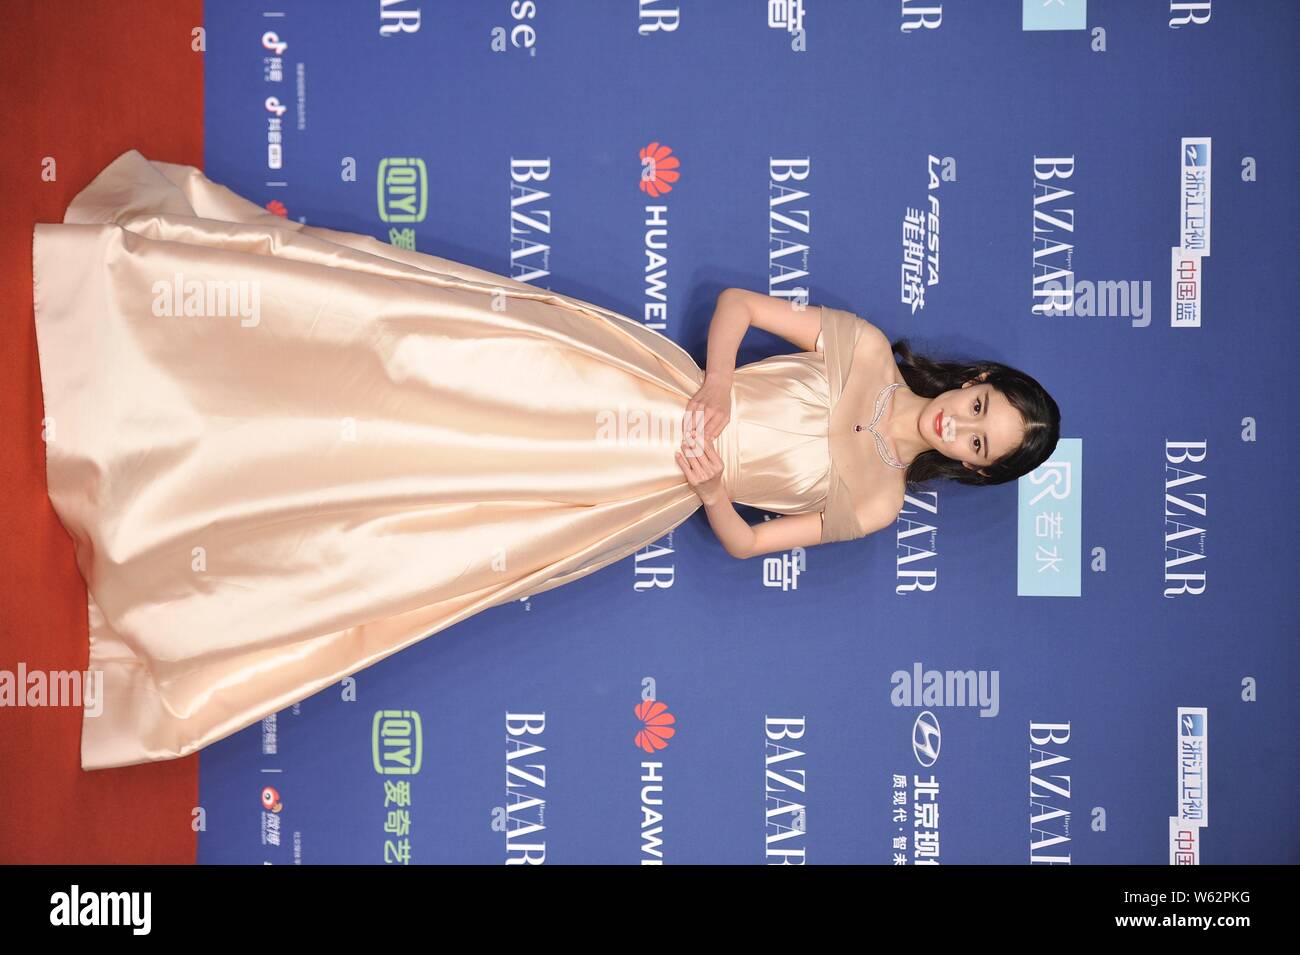 L'actrice chinoise Yang Mi arrive sur le tapis rouge pour le bazar 2018 Star Charity Gala nuit à Beijing, Chine, 12 octobre 2018. Robe : Reem Acra Banque D'Images